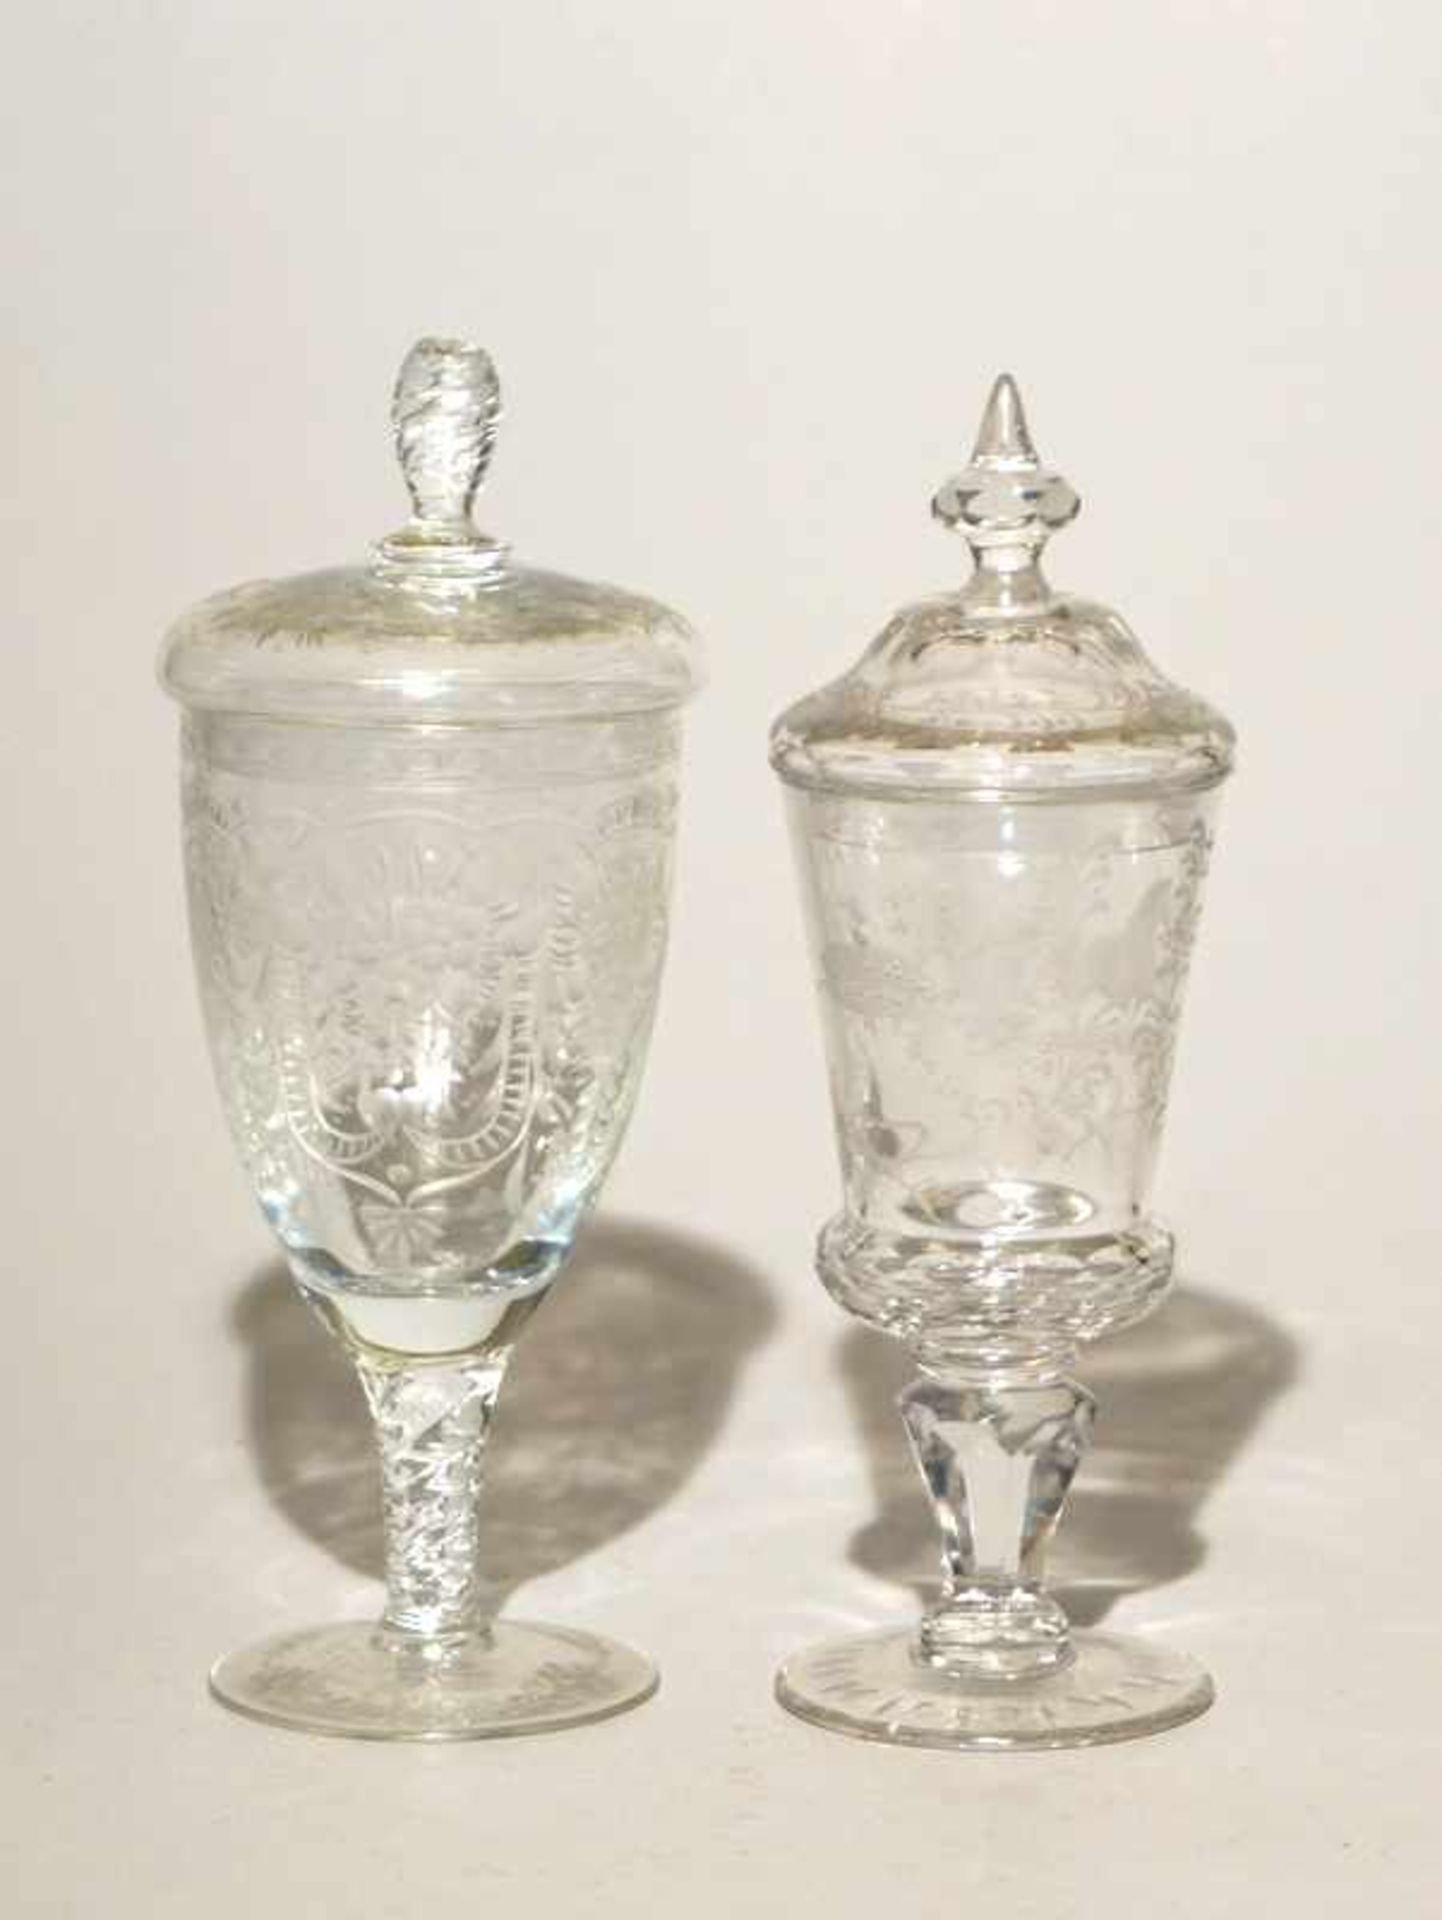 Rosenthal, Kristall: Konvolut Sammlerglas, u. A. Deckelpokal nach barockem Vorbild5-teilig,